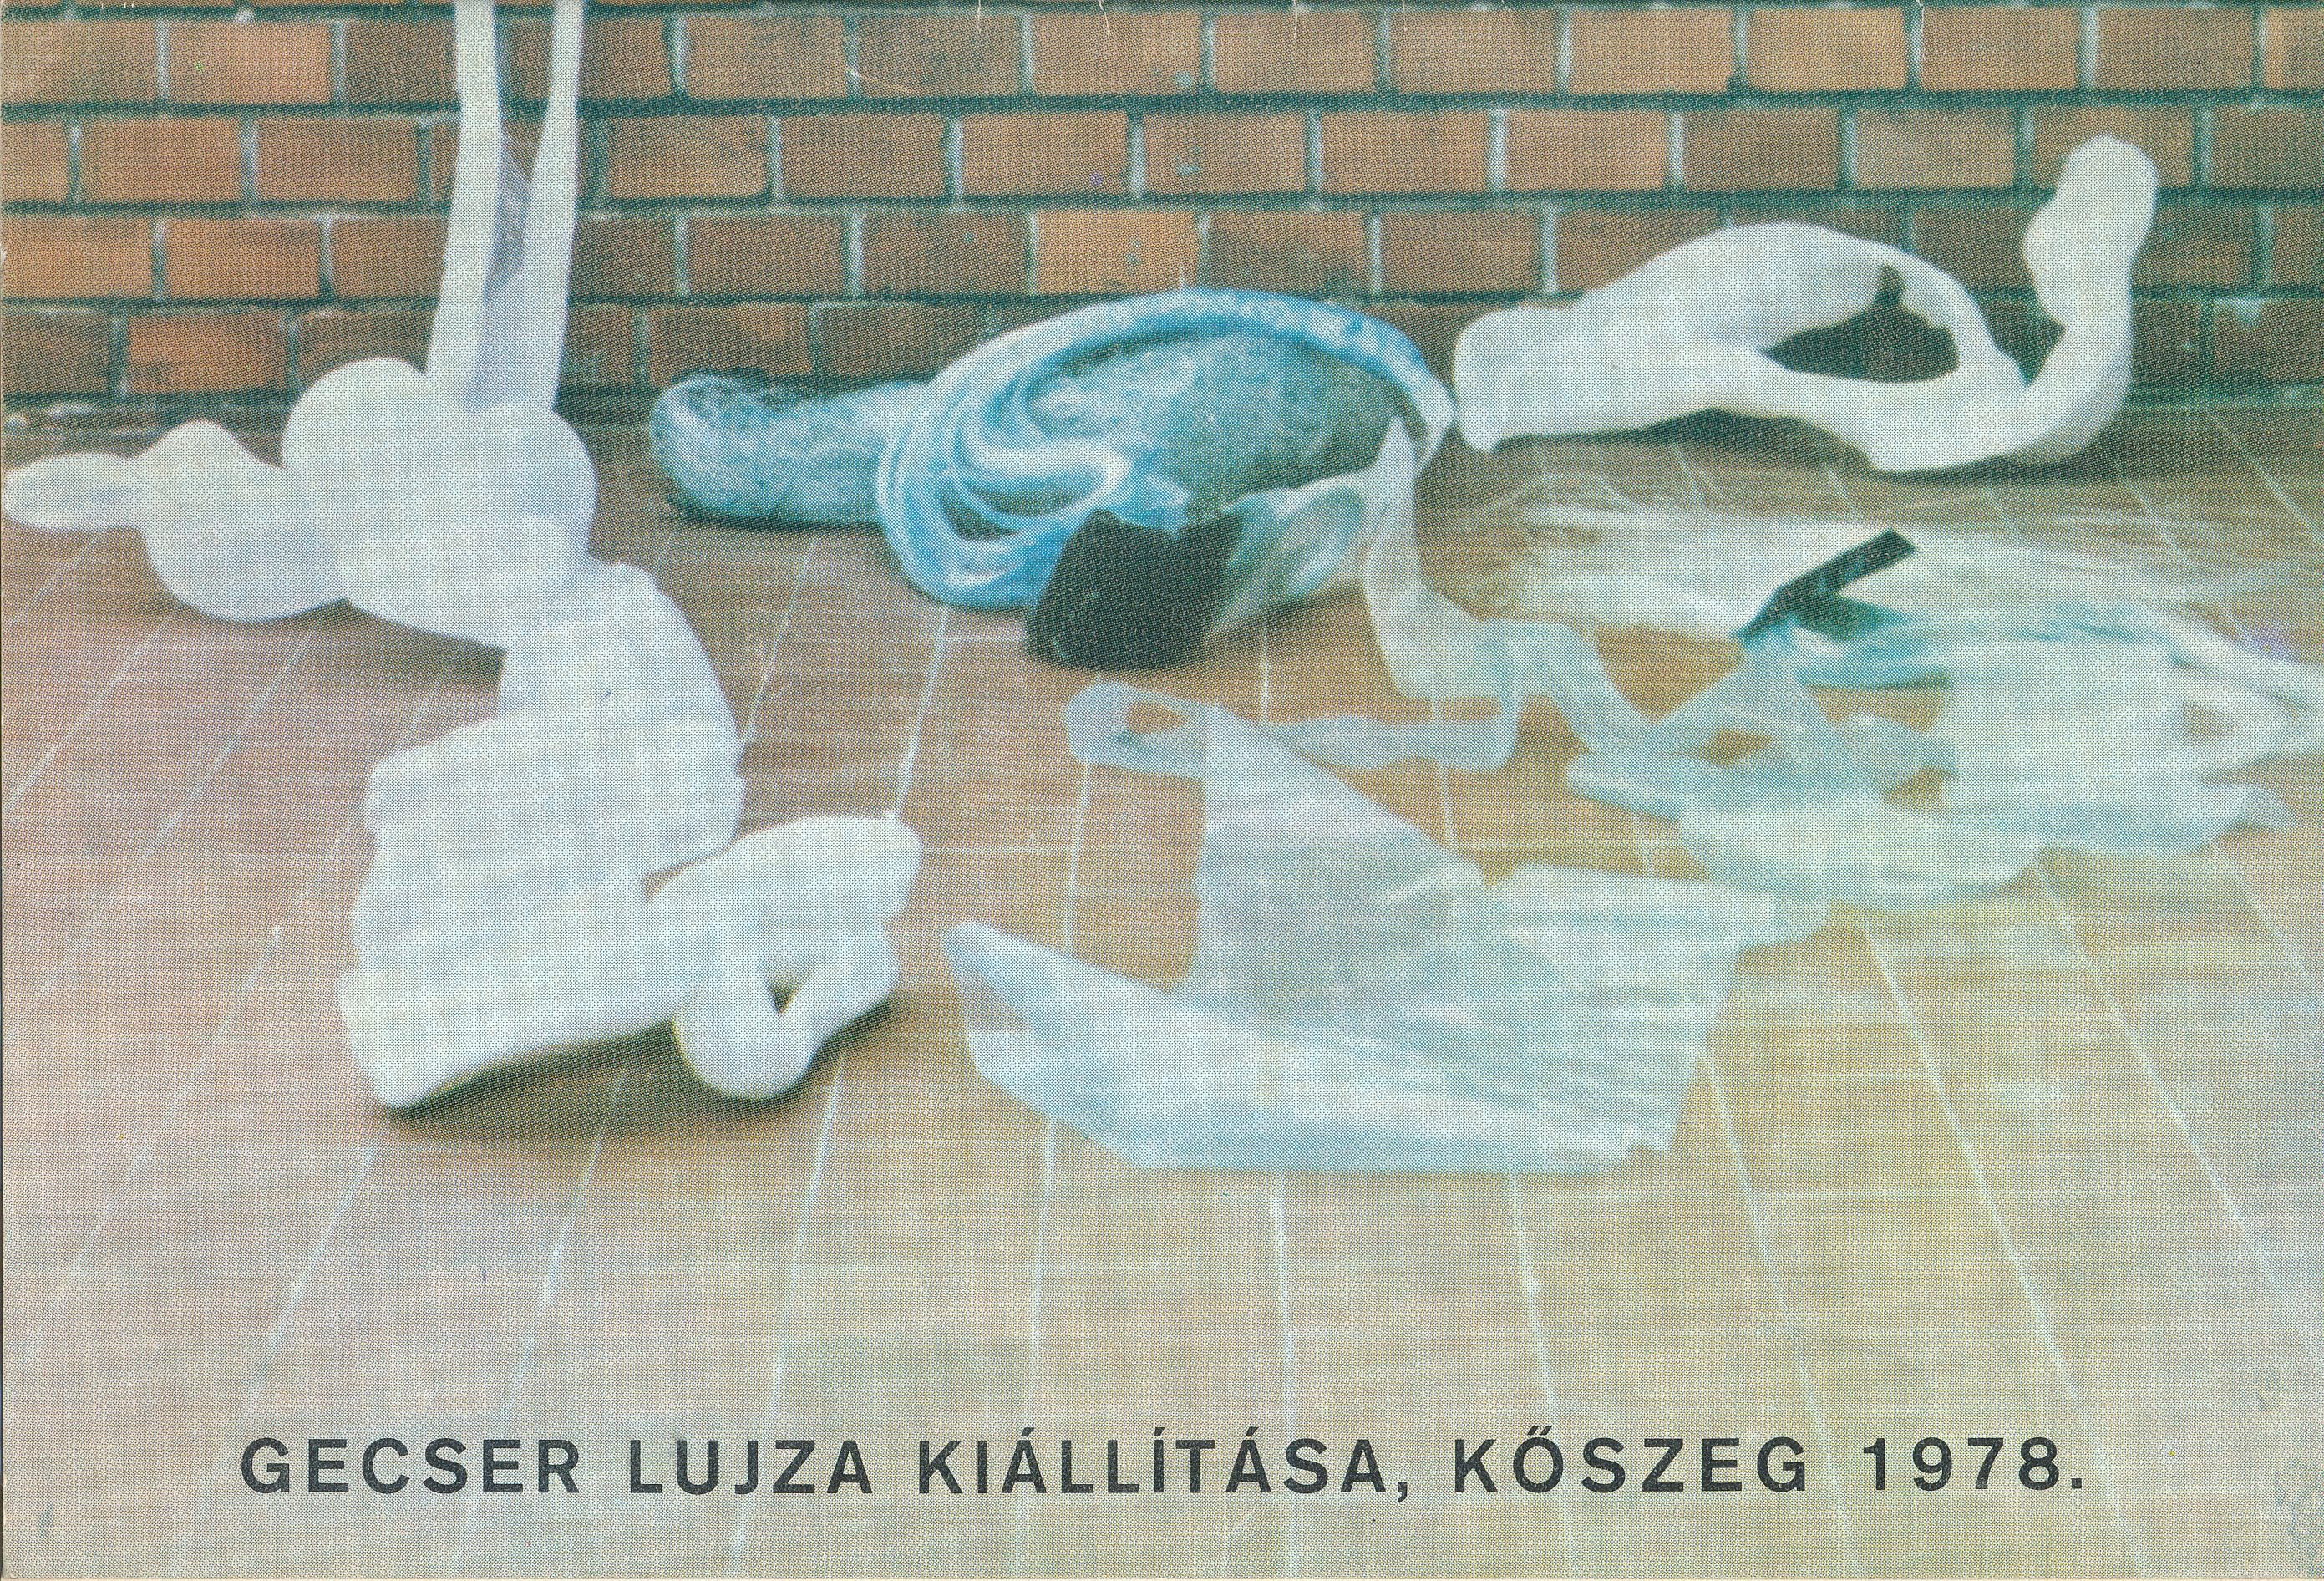 Gecser Lujza kiállítás Kőszeg 1978. (Design DigiTár – Iparművészeti archívum CC BY-NC-SA)